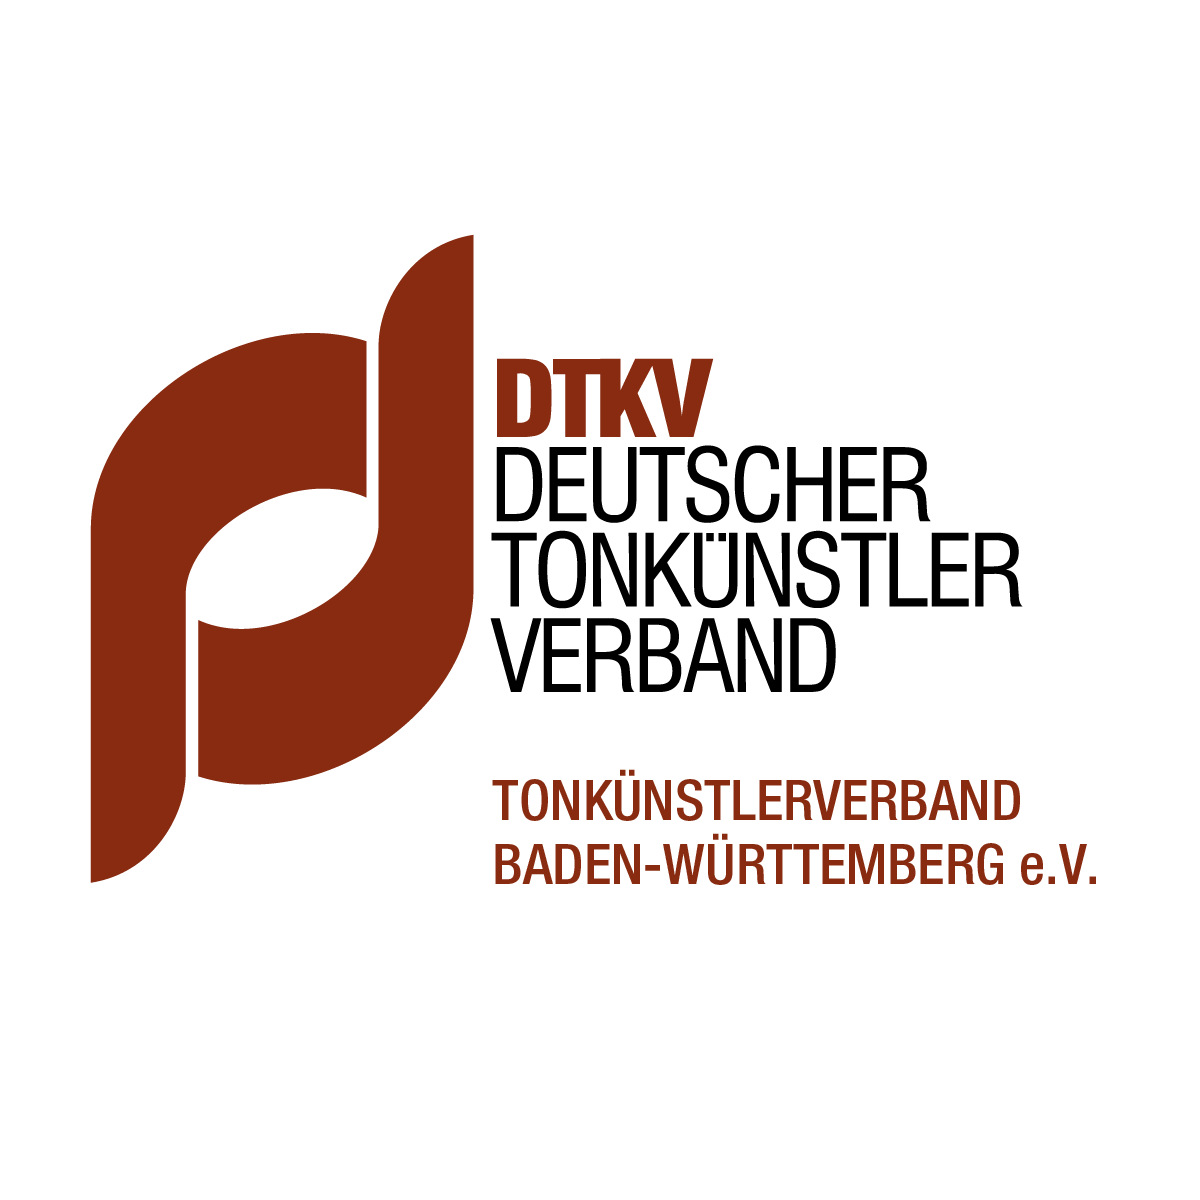 www.dtkv-bawue.de